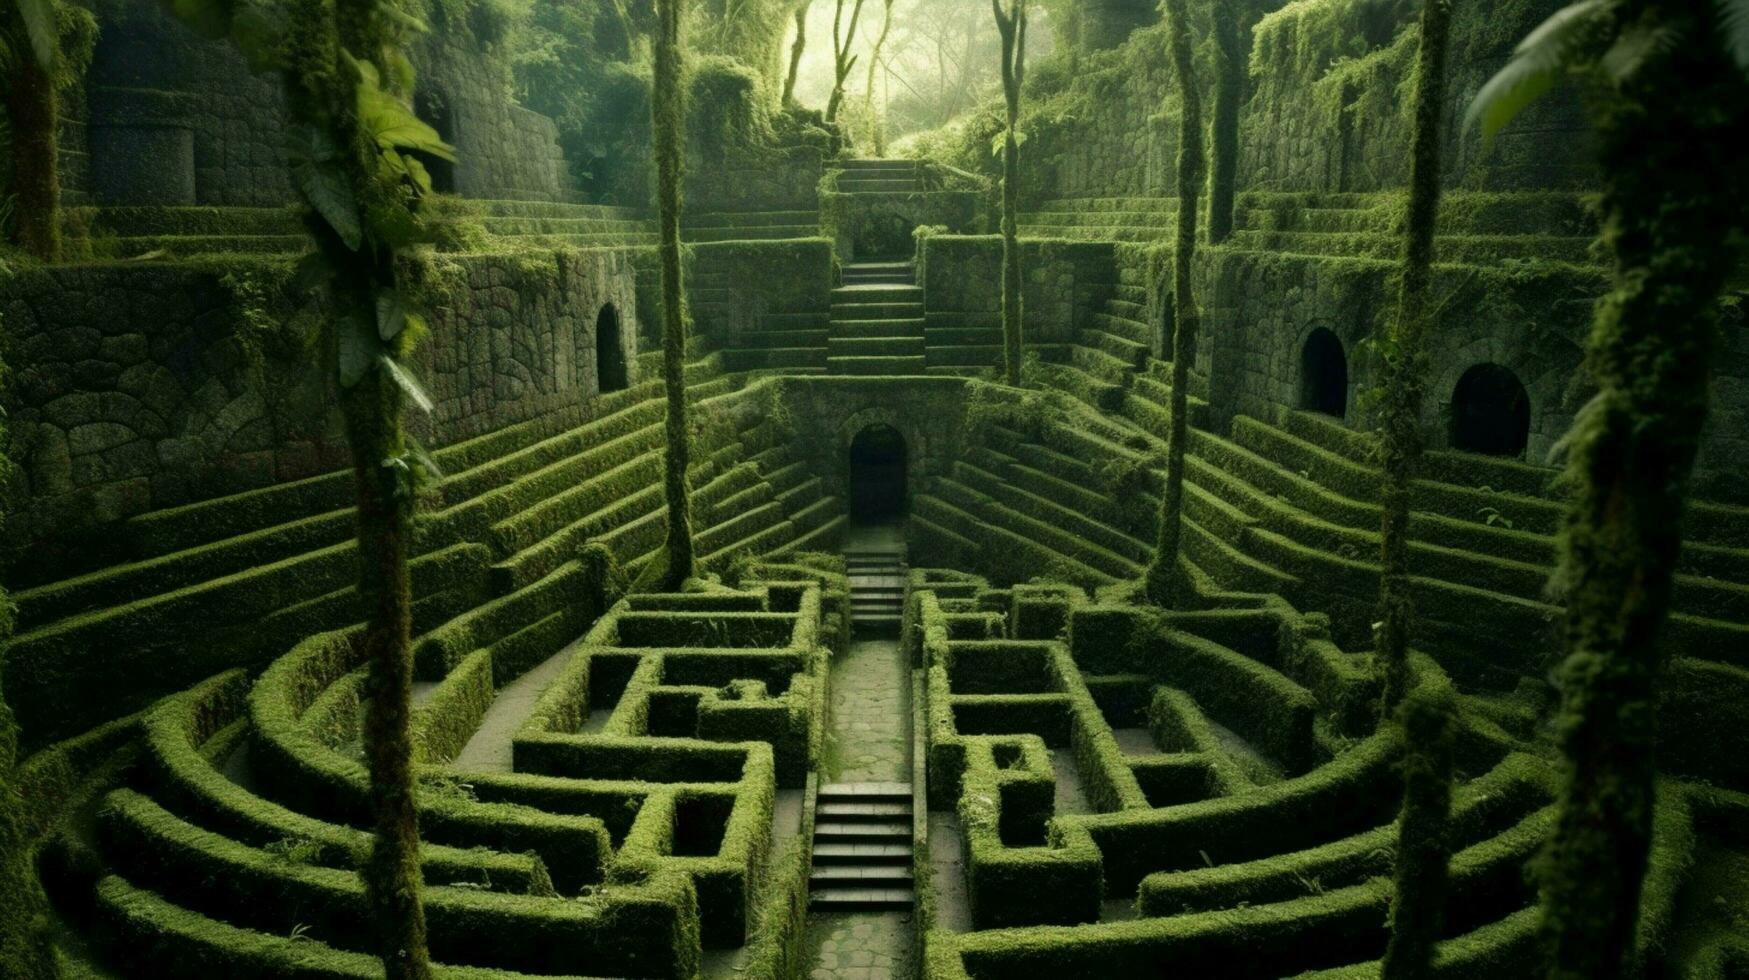 a fantasy maze in jungle high walls of concrete photo